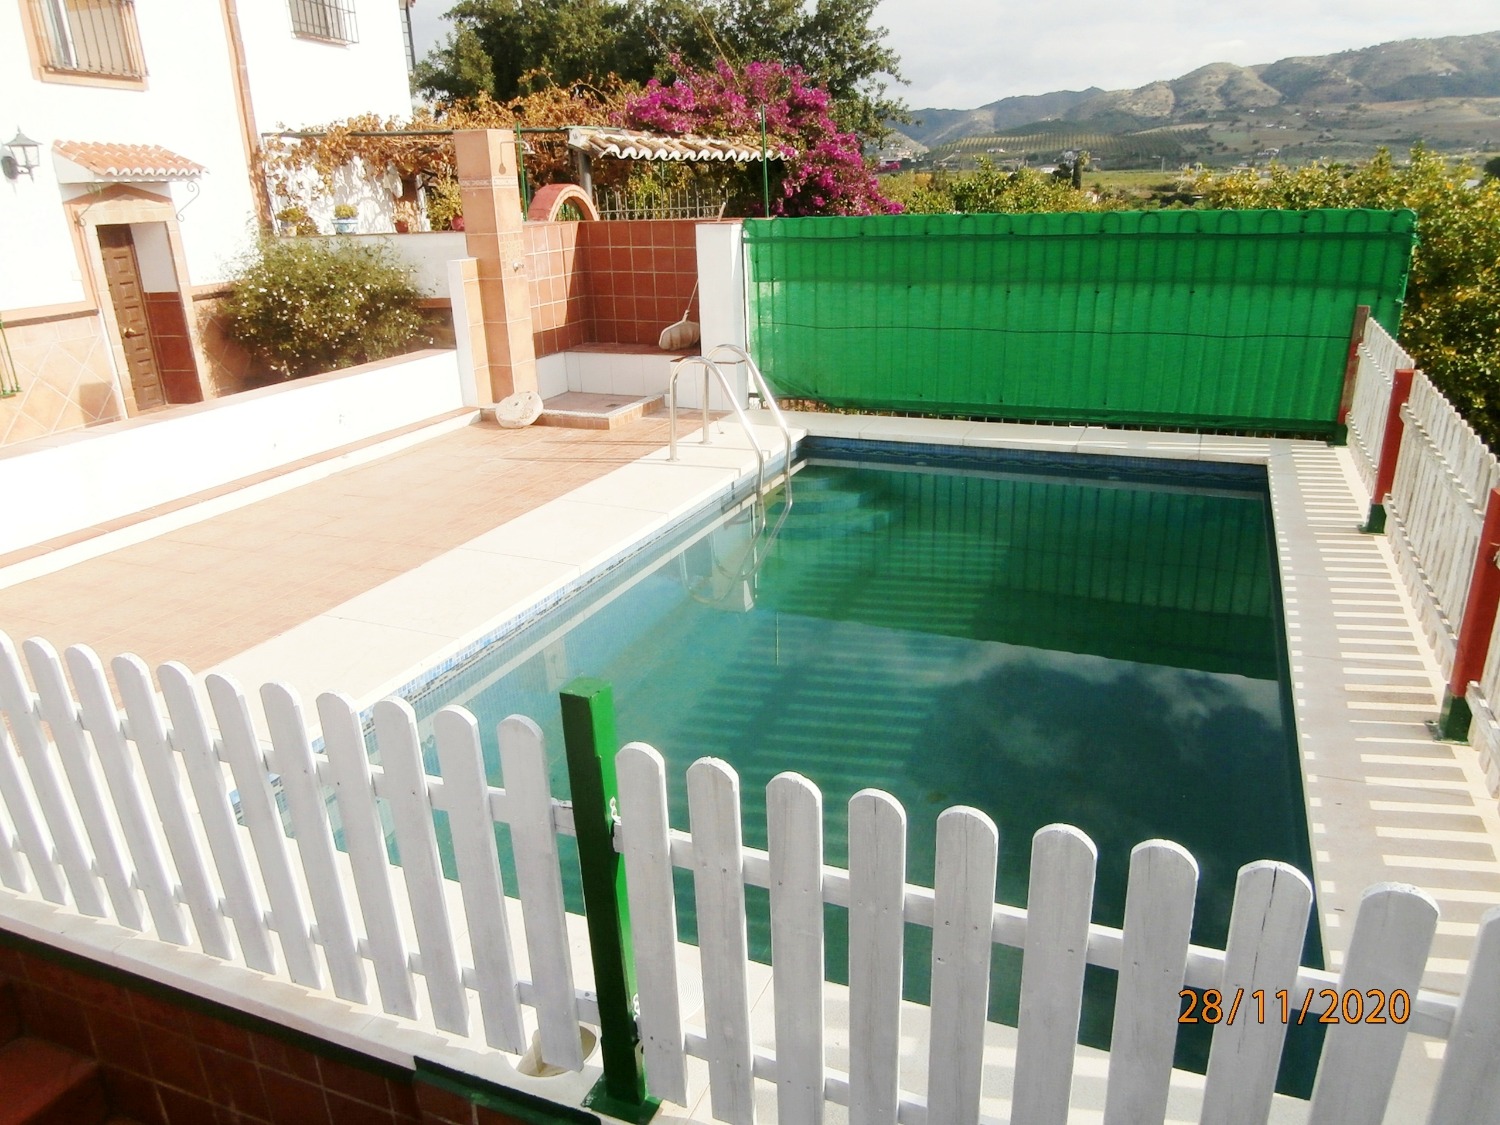 Große Doppelhaushälfte im andalusischen Stil mit Pool, Ackerland, komplett eingezäunt ca. 3.220 m2, gute Zufahrt.